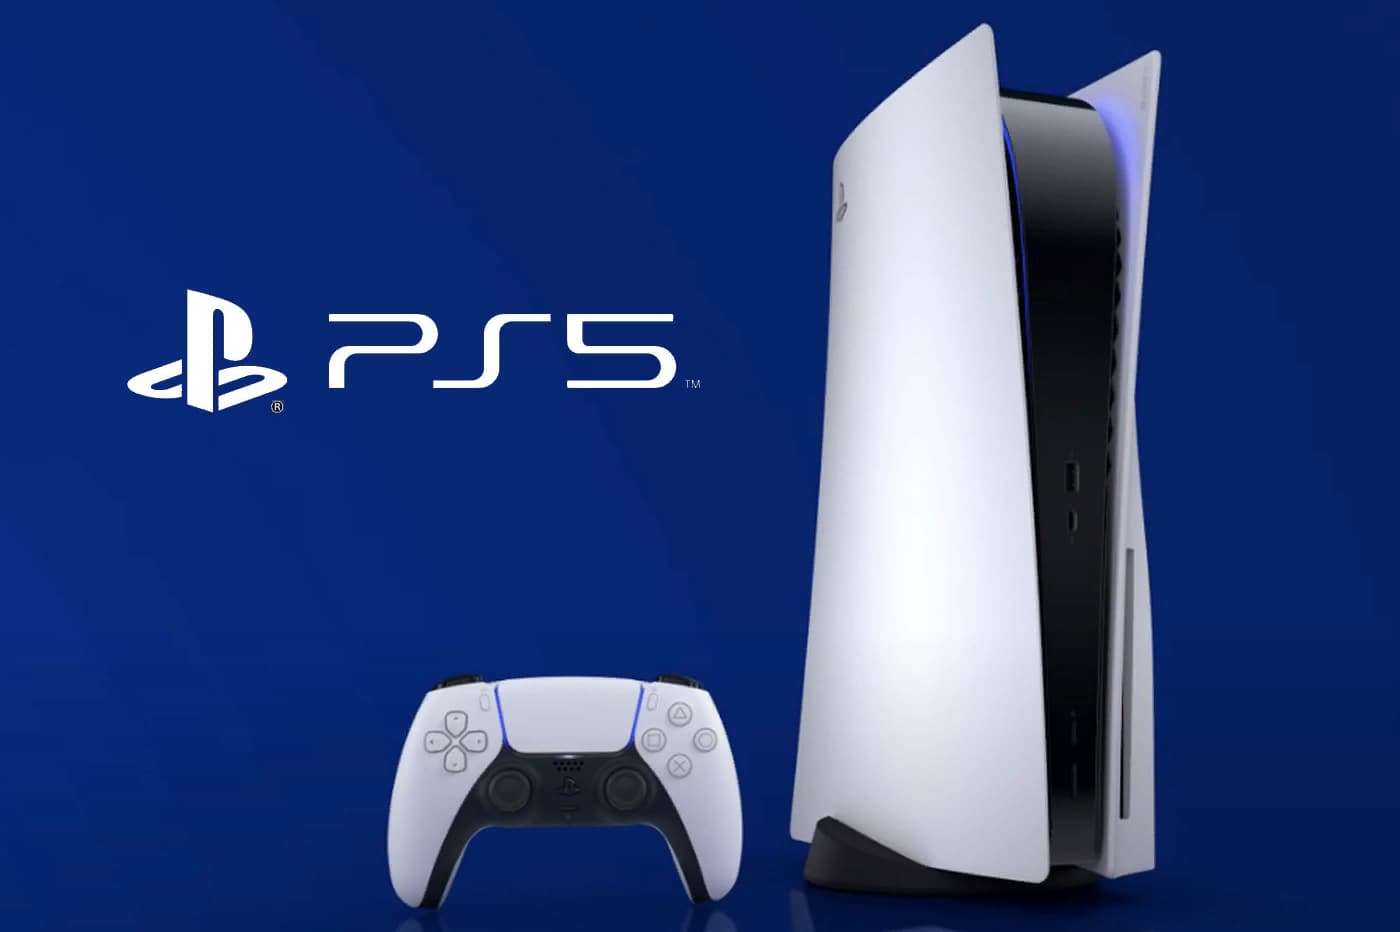 Дальневосточникам предлагают выиграть PlayStation 5 от ТНТ за крутое фото или видео с отцом или сыном